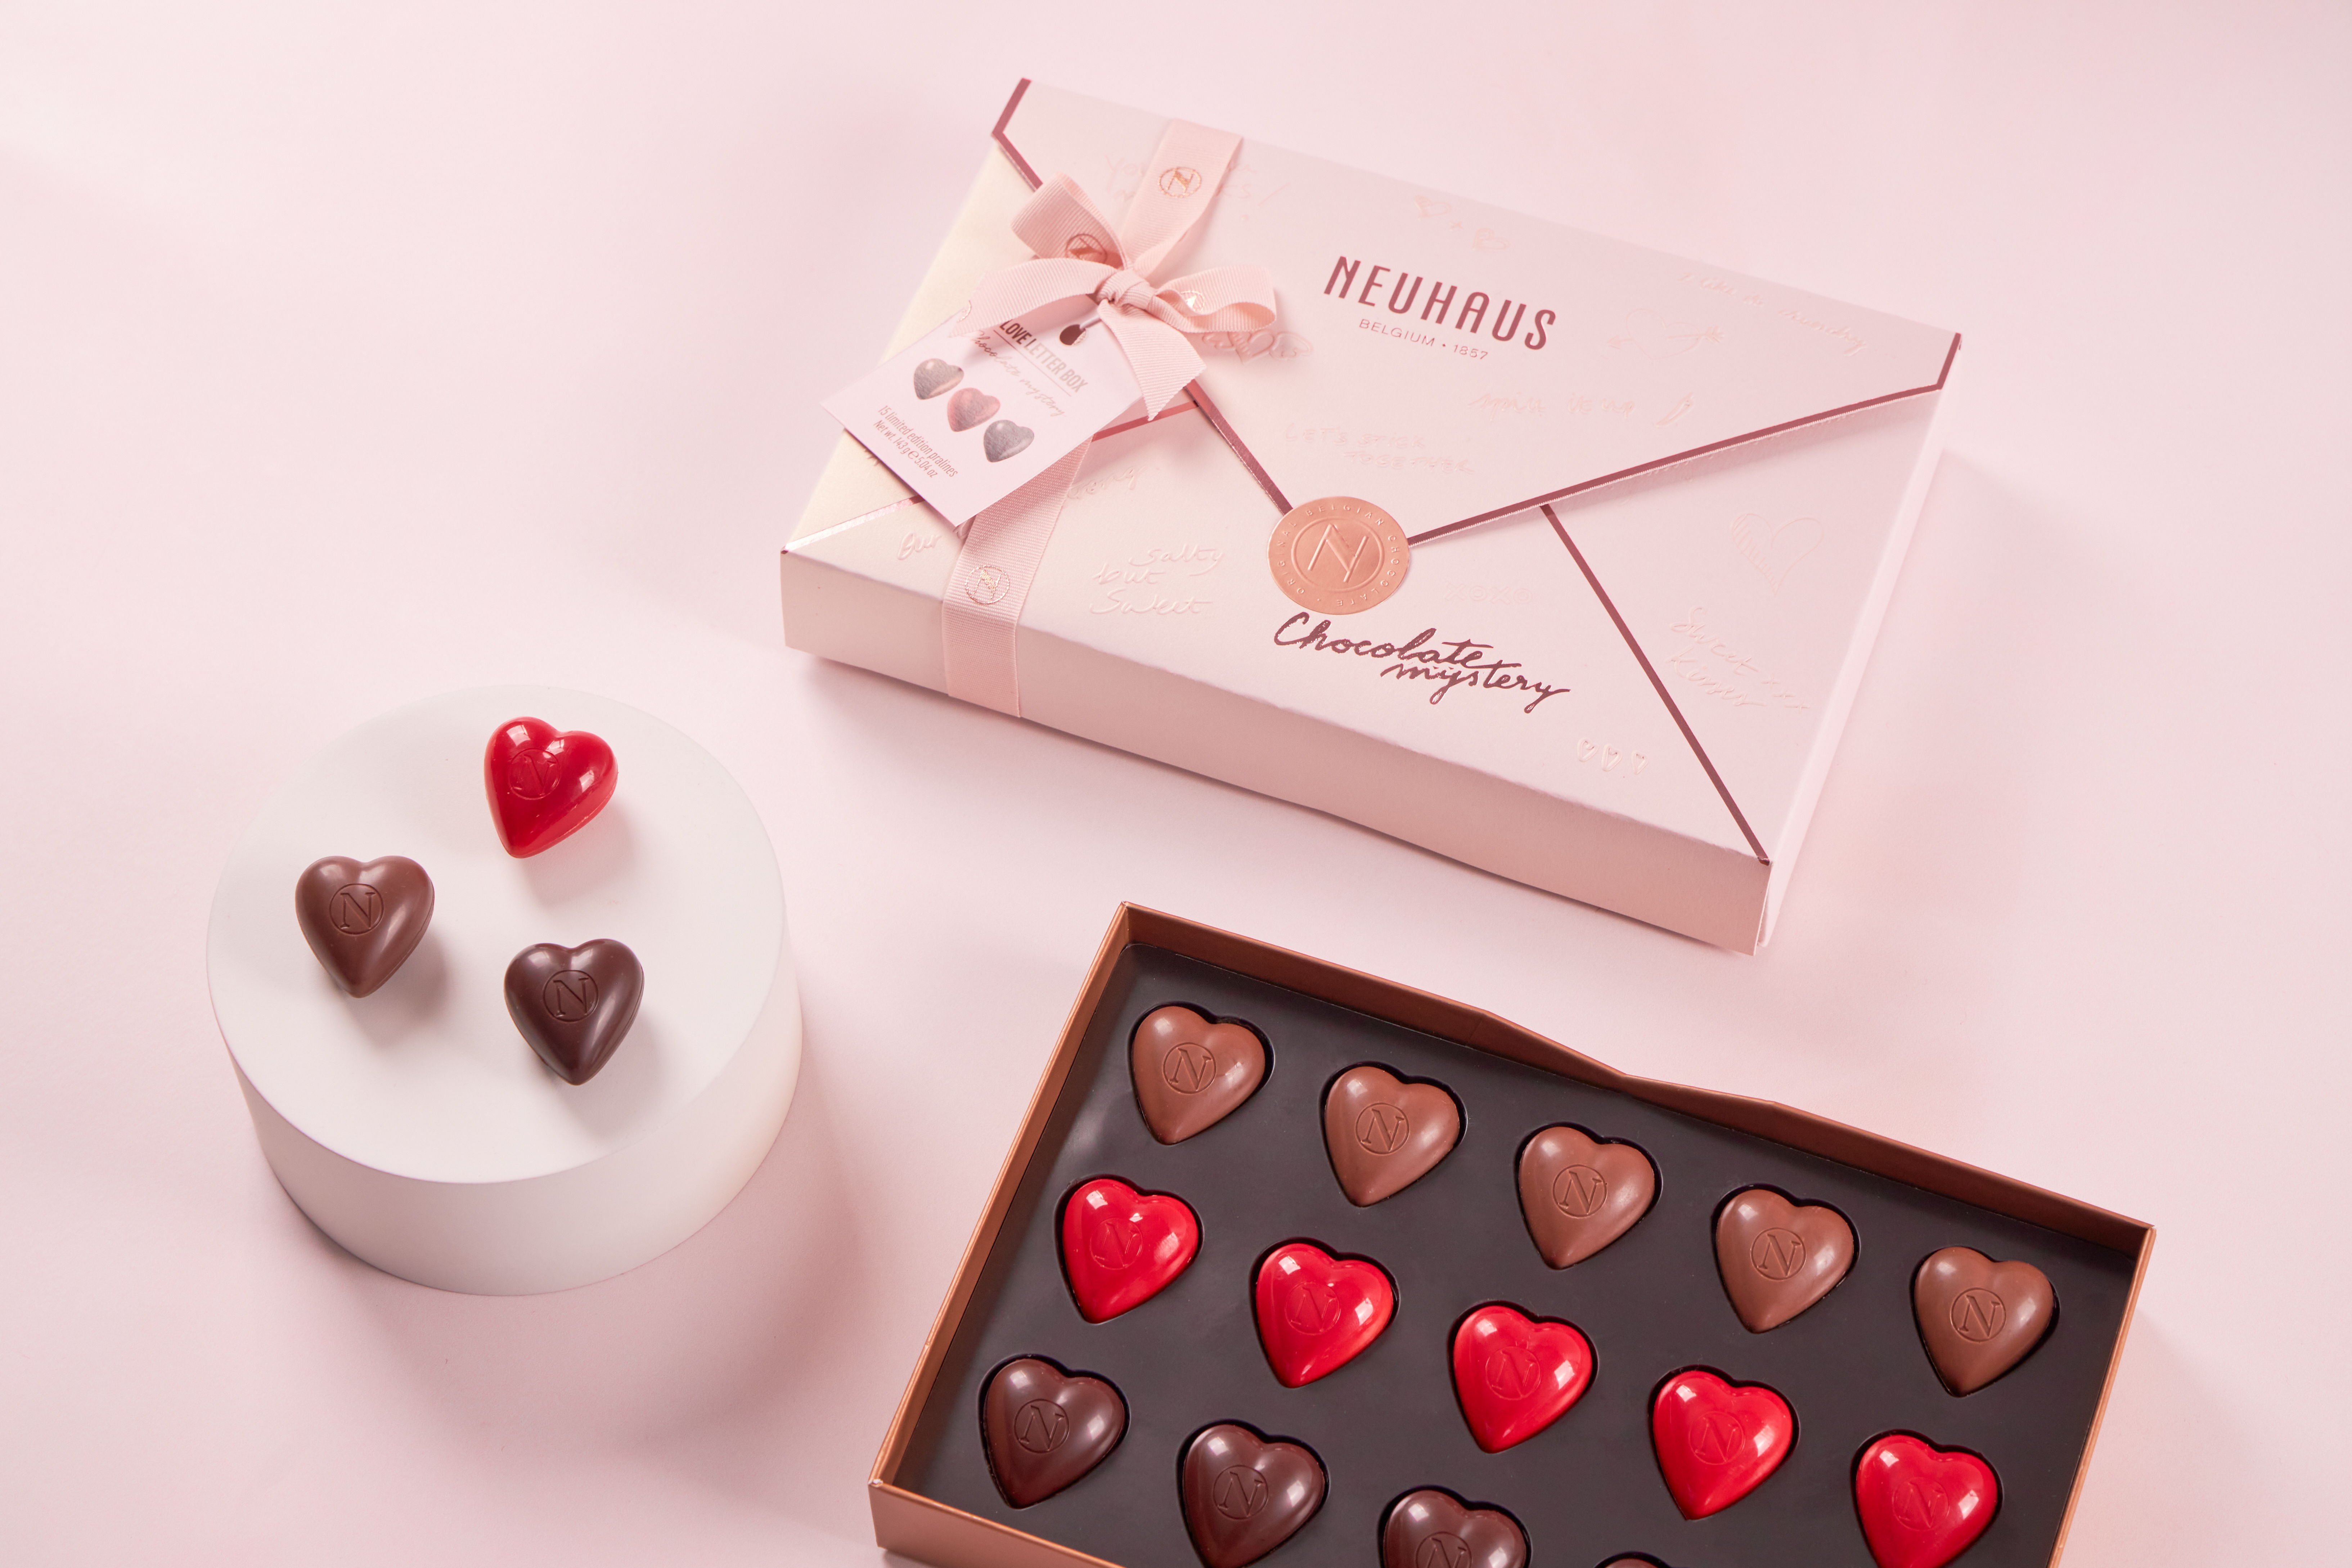 Mistero del cioccolato Neuhaus: il mistero del cioccolato per San Valentino  - Puredeluxe